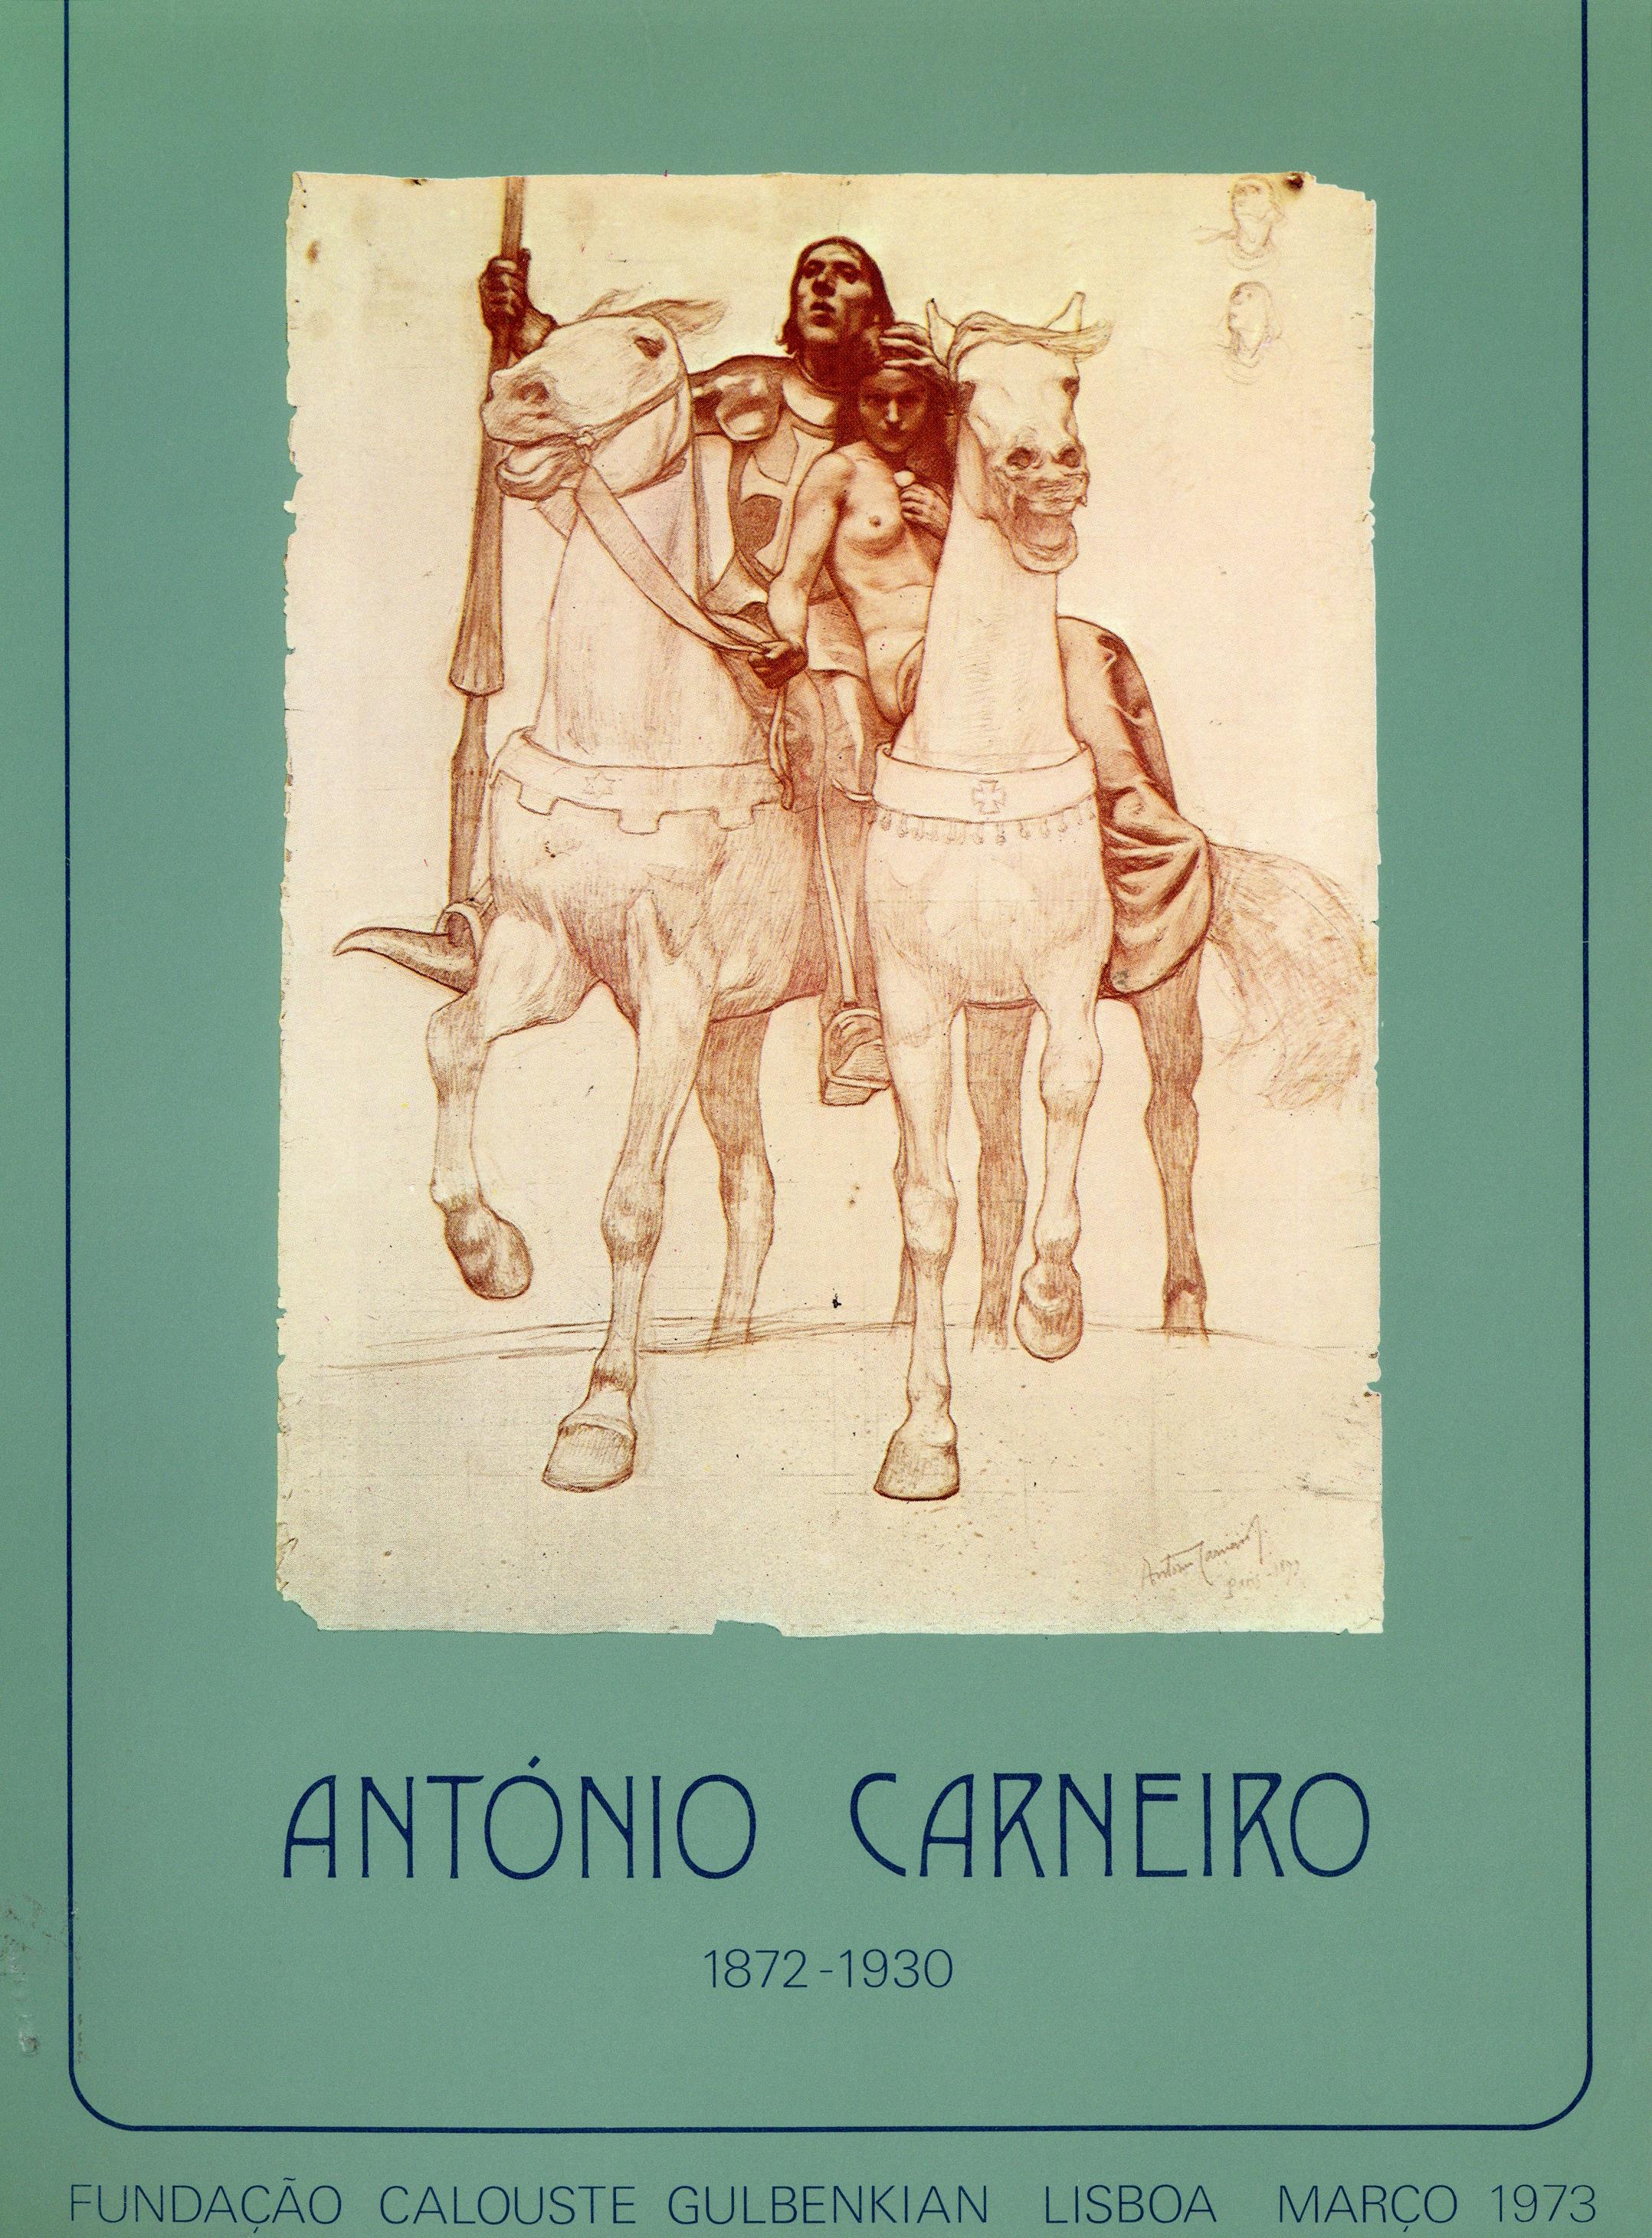 António Carneiro (1872 – 1930). Exposição Retrospectiva do I Centenário